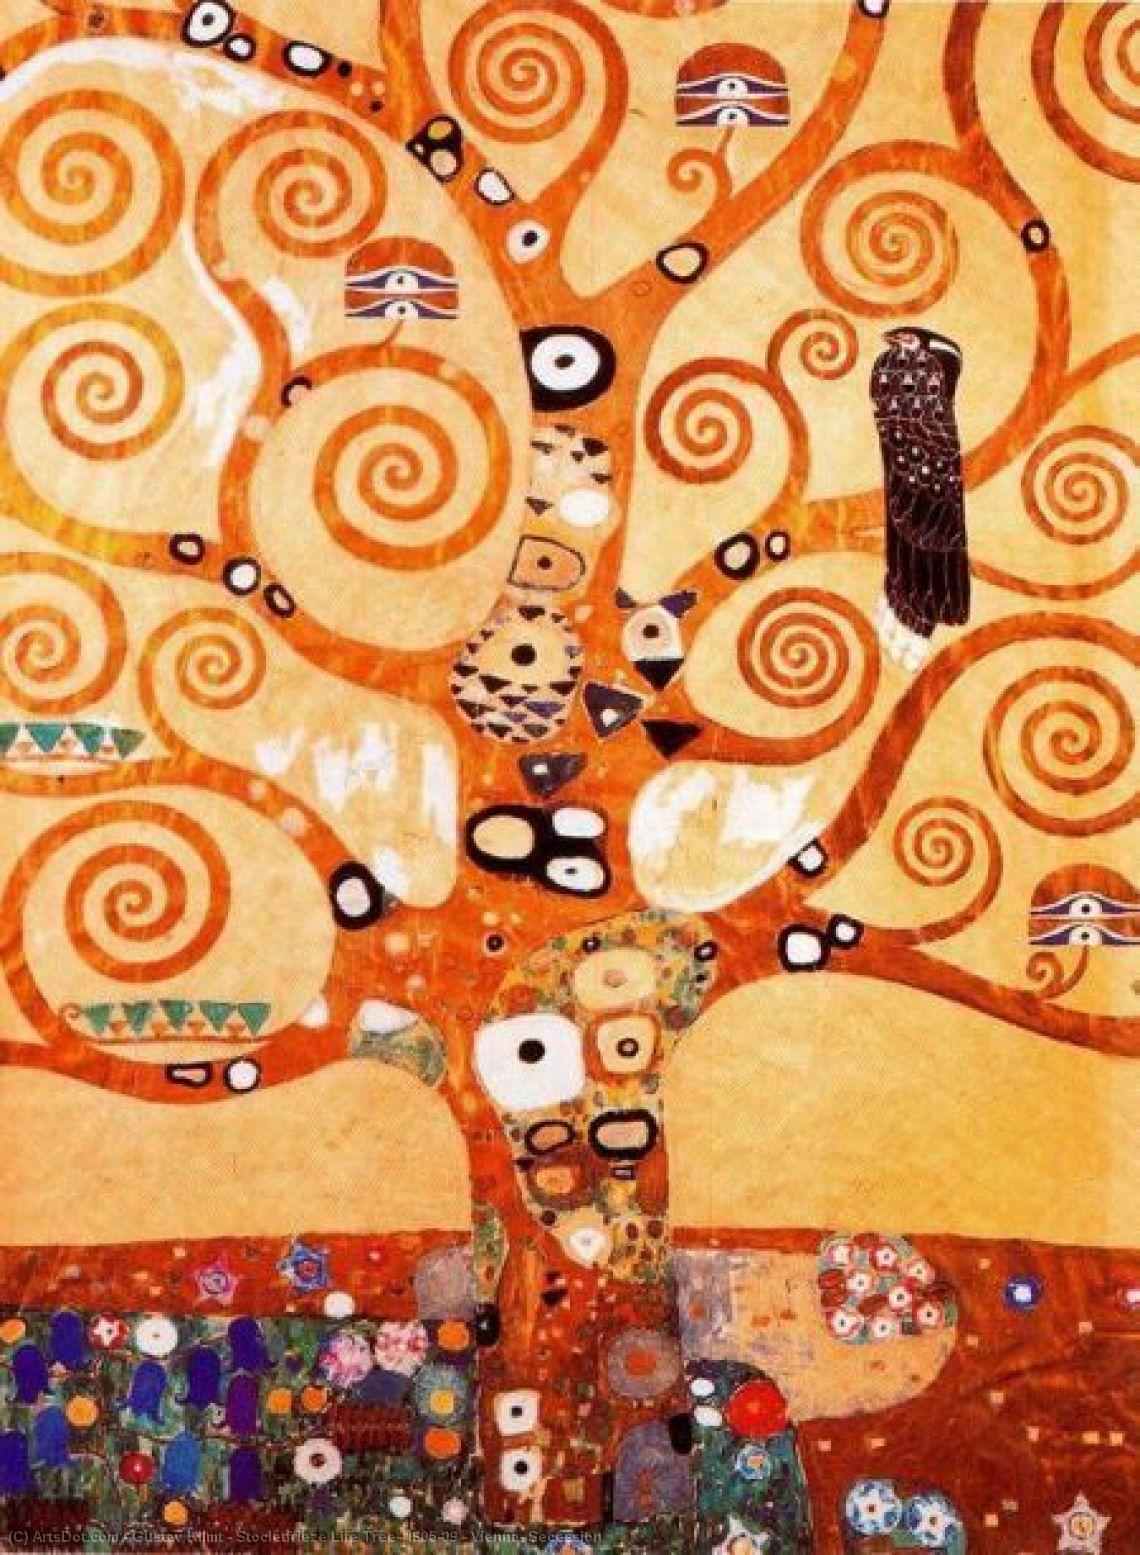 Wikoo.org - موسوعة الفنون الجميلة - اللوحة، العمل الفني Gustav Klimt - Stocletfrieze Life Tree, 1905-09 - Vienna, Secession